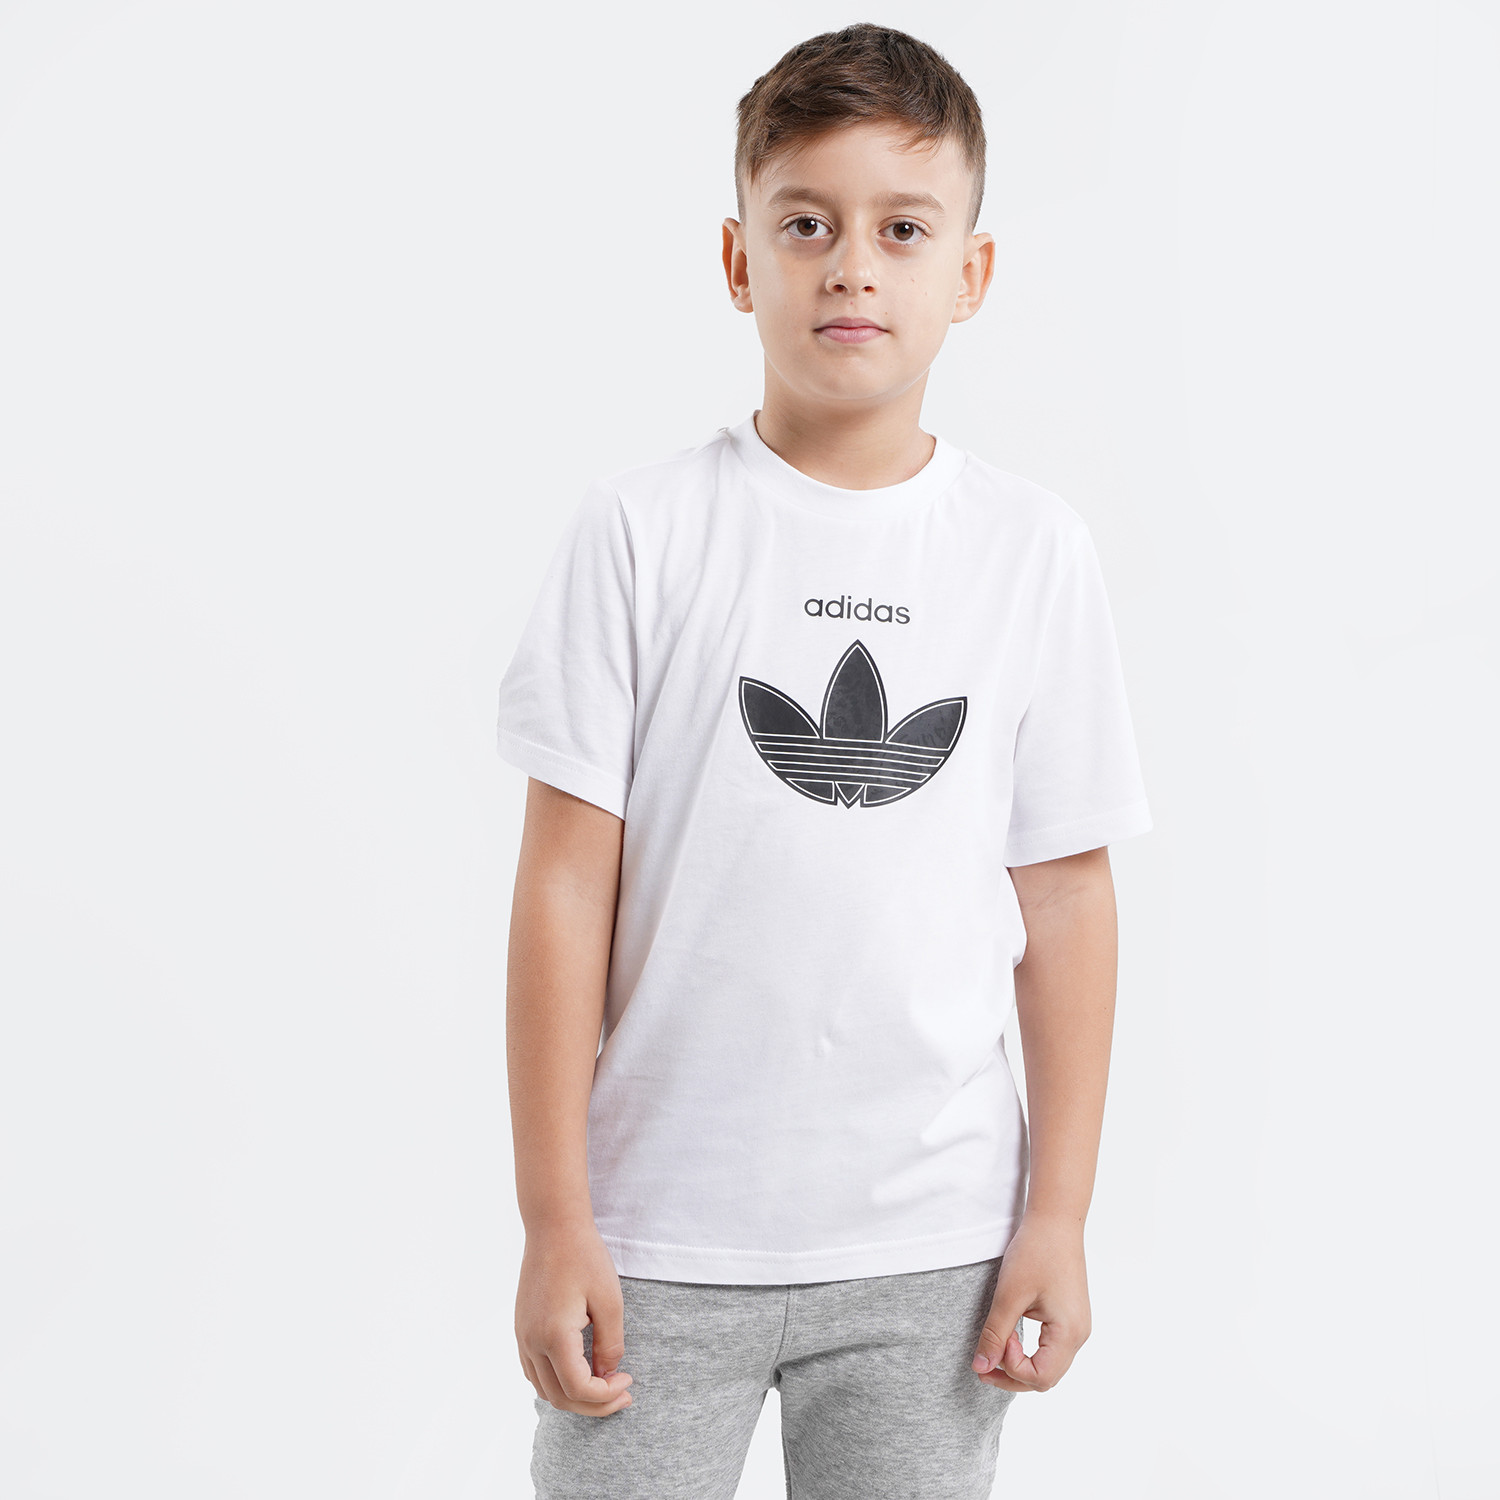 adidas Originals Παιδικό T-shirt (9000091141_1539)